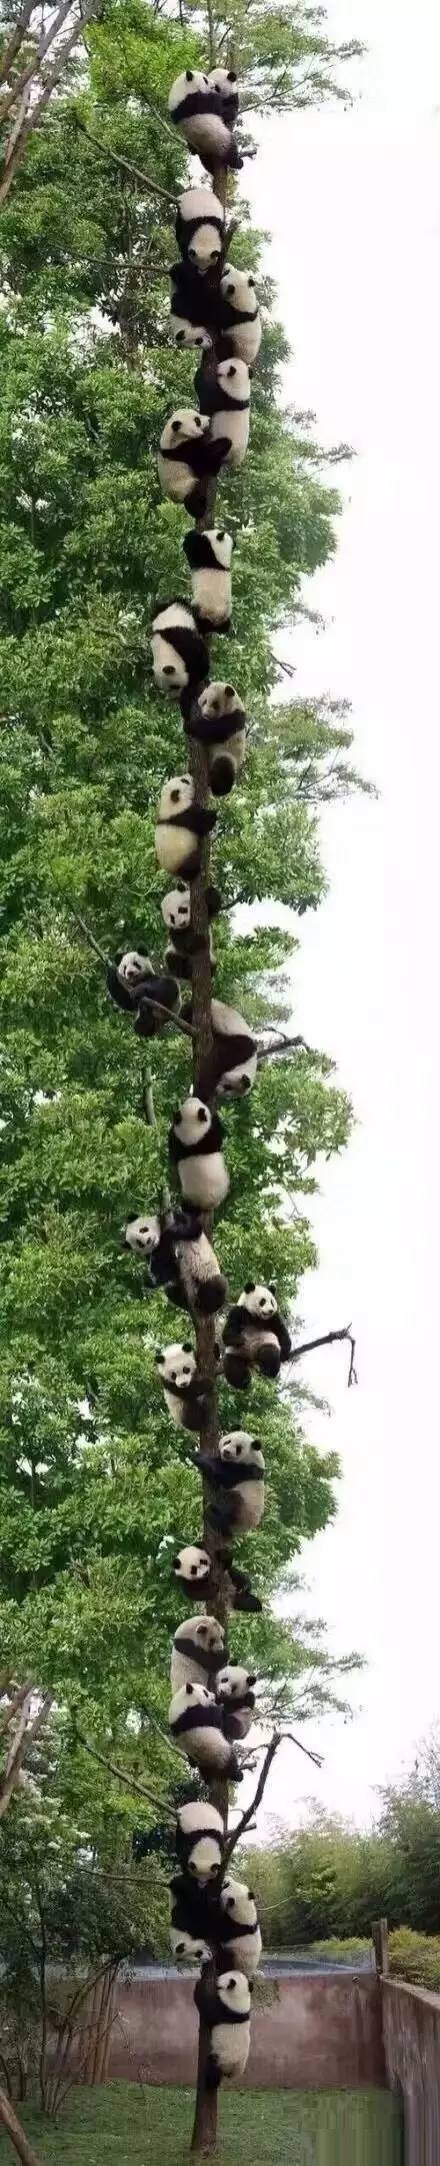 无聊了可以去树上摘熊猫